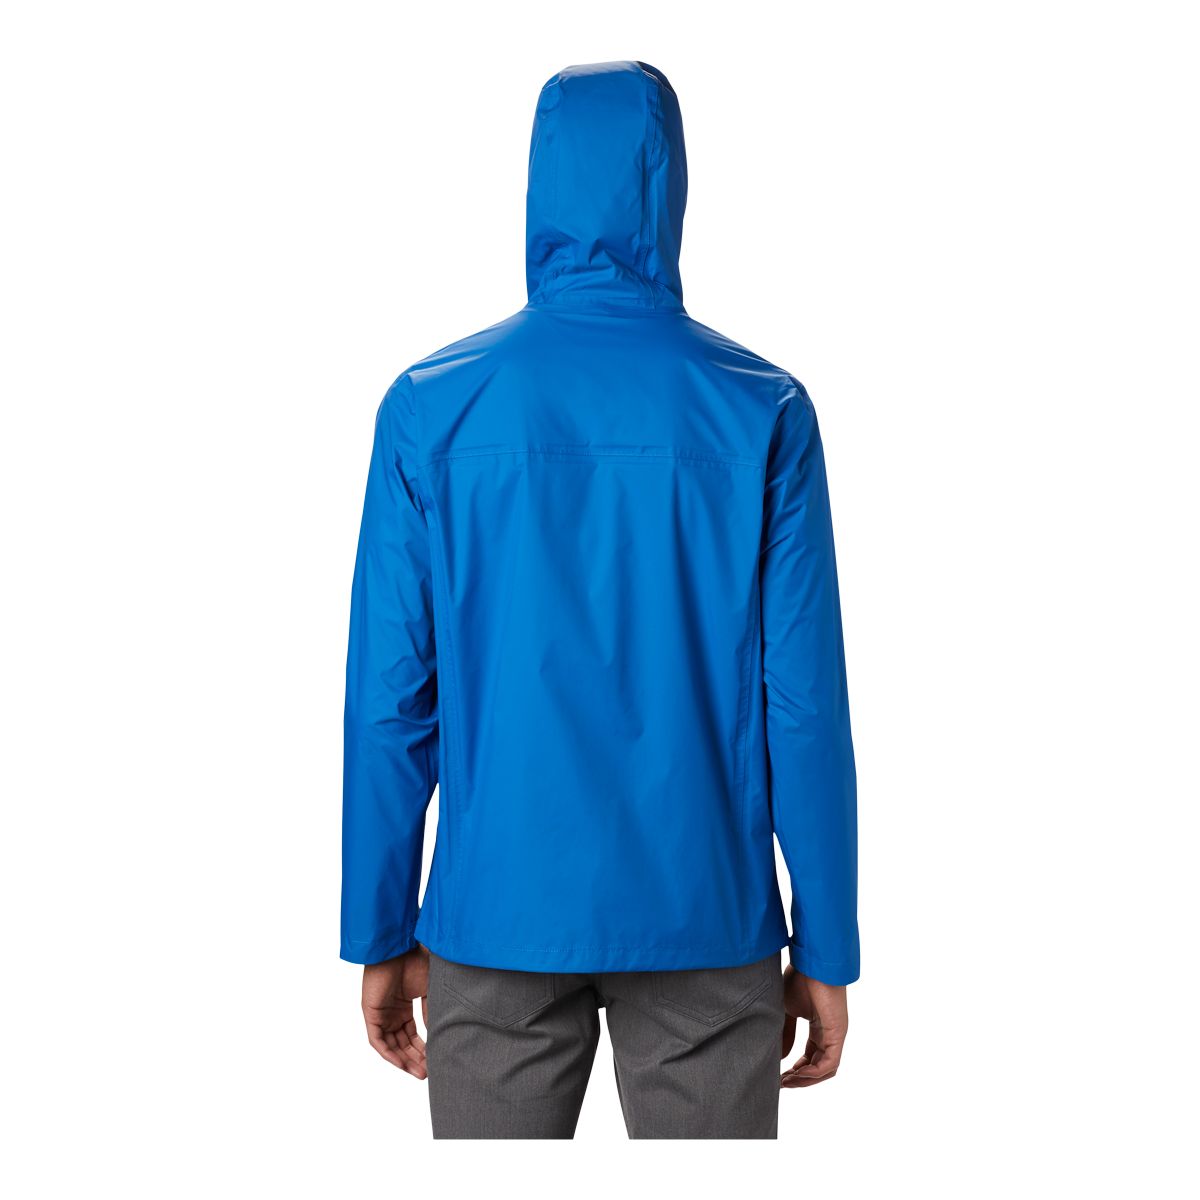 Columbia Sportswear Men's S-3XL WATERPROOF Mountaineering Packable Rain  Jacket